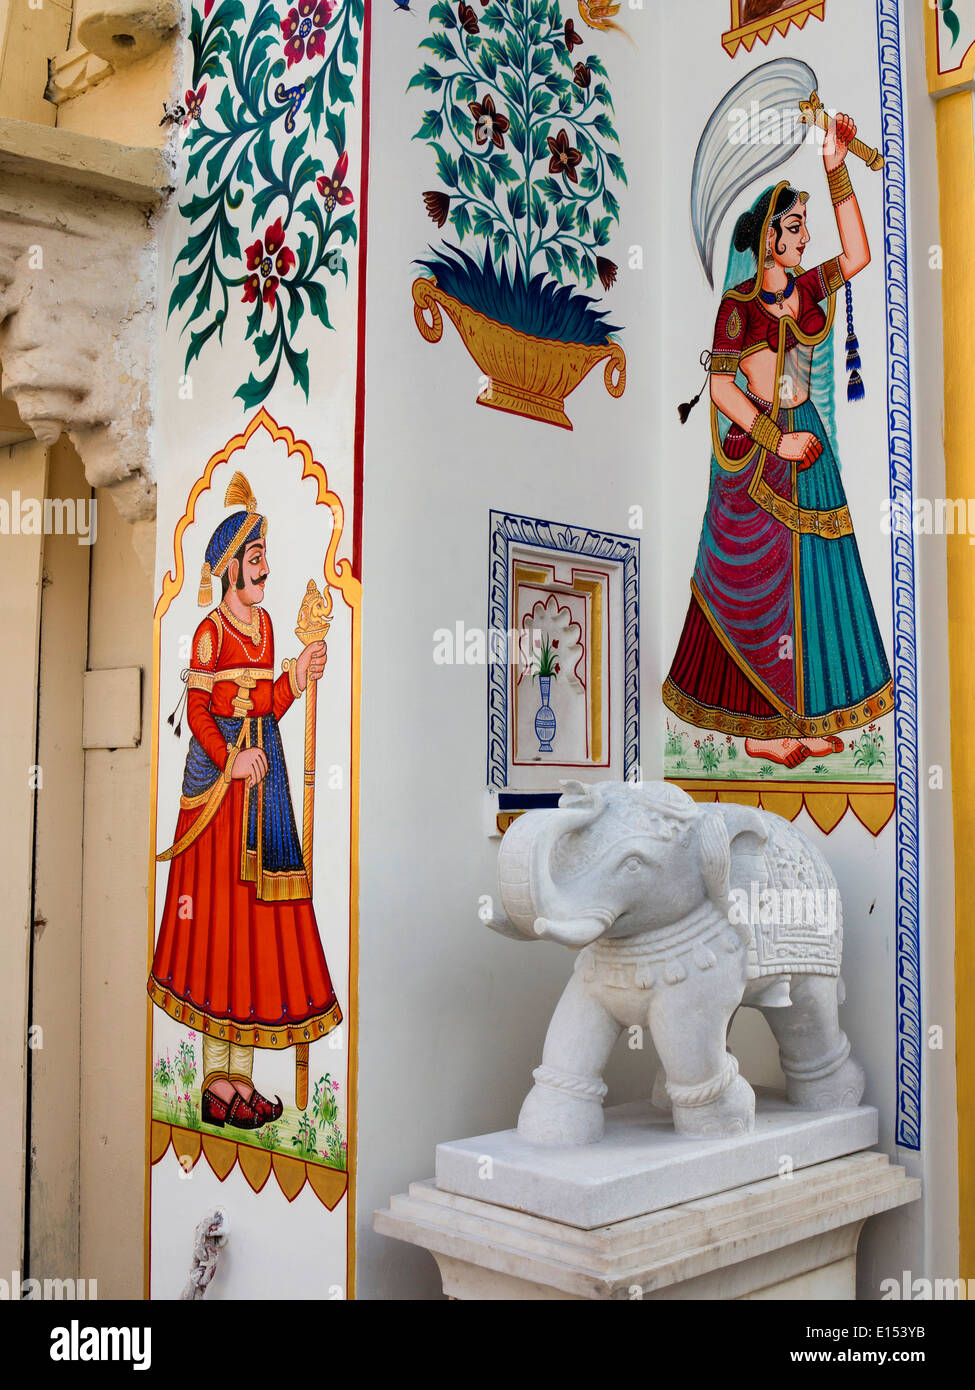 Indien, Rajasthan, Udaipur, Stadtschloss, hochwertigen traditionellen Rajasthani Folk Art, Wandmalerei Stockfoto